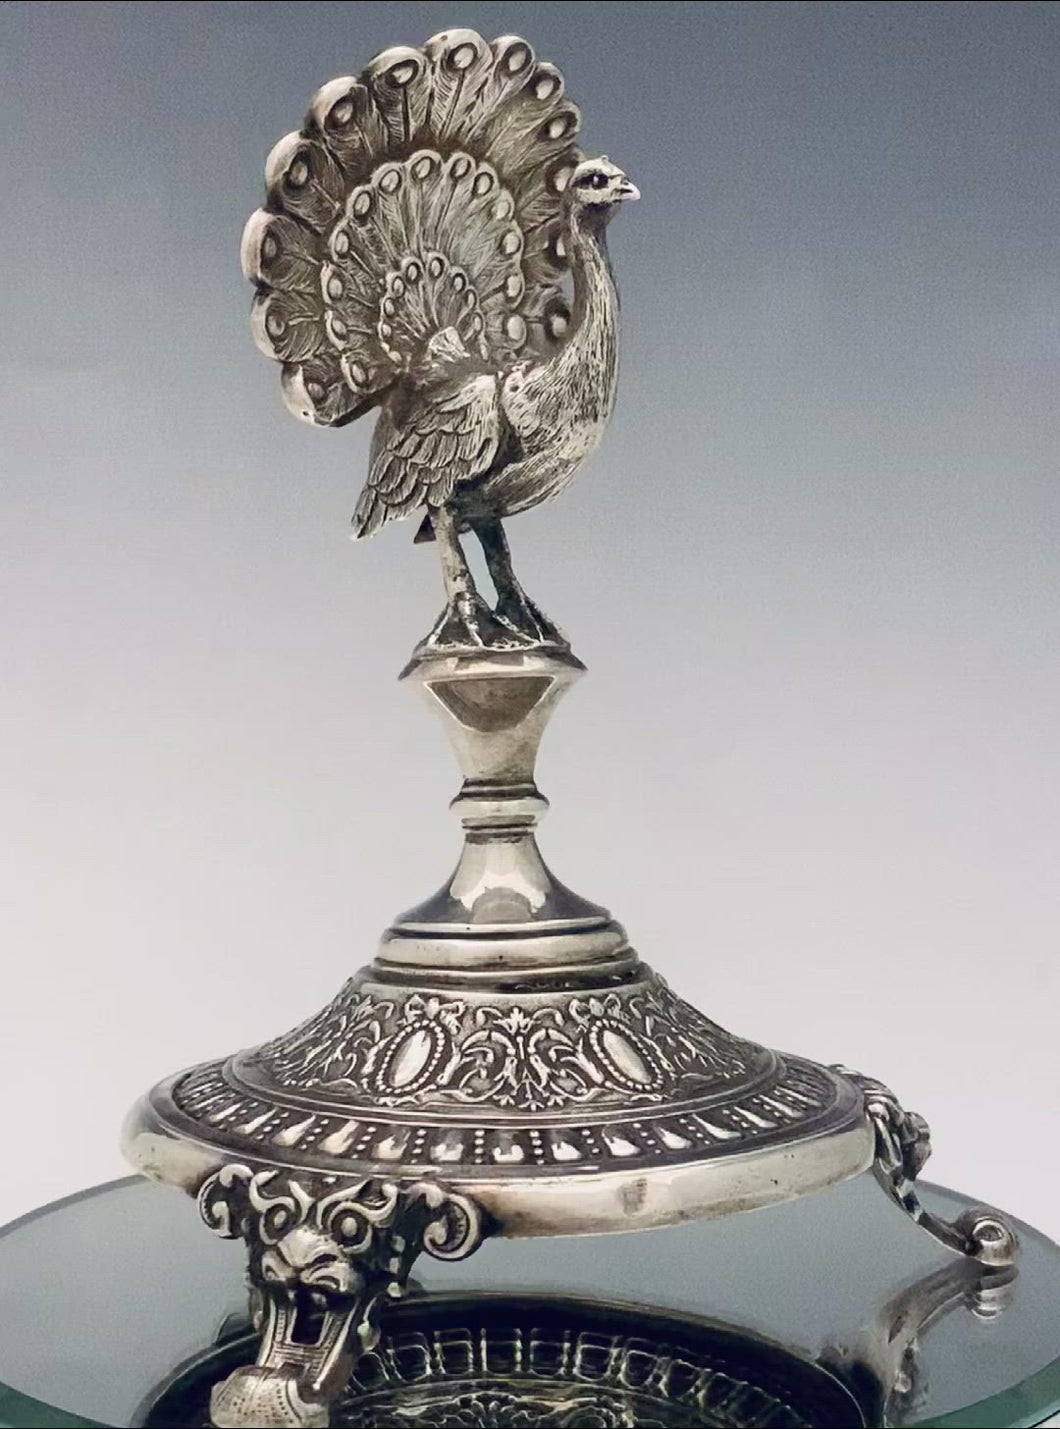 Raro porta stuzzicadenti in argento con sembianze di pavone. Realizzato in Francia nella fine dell’800.